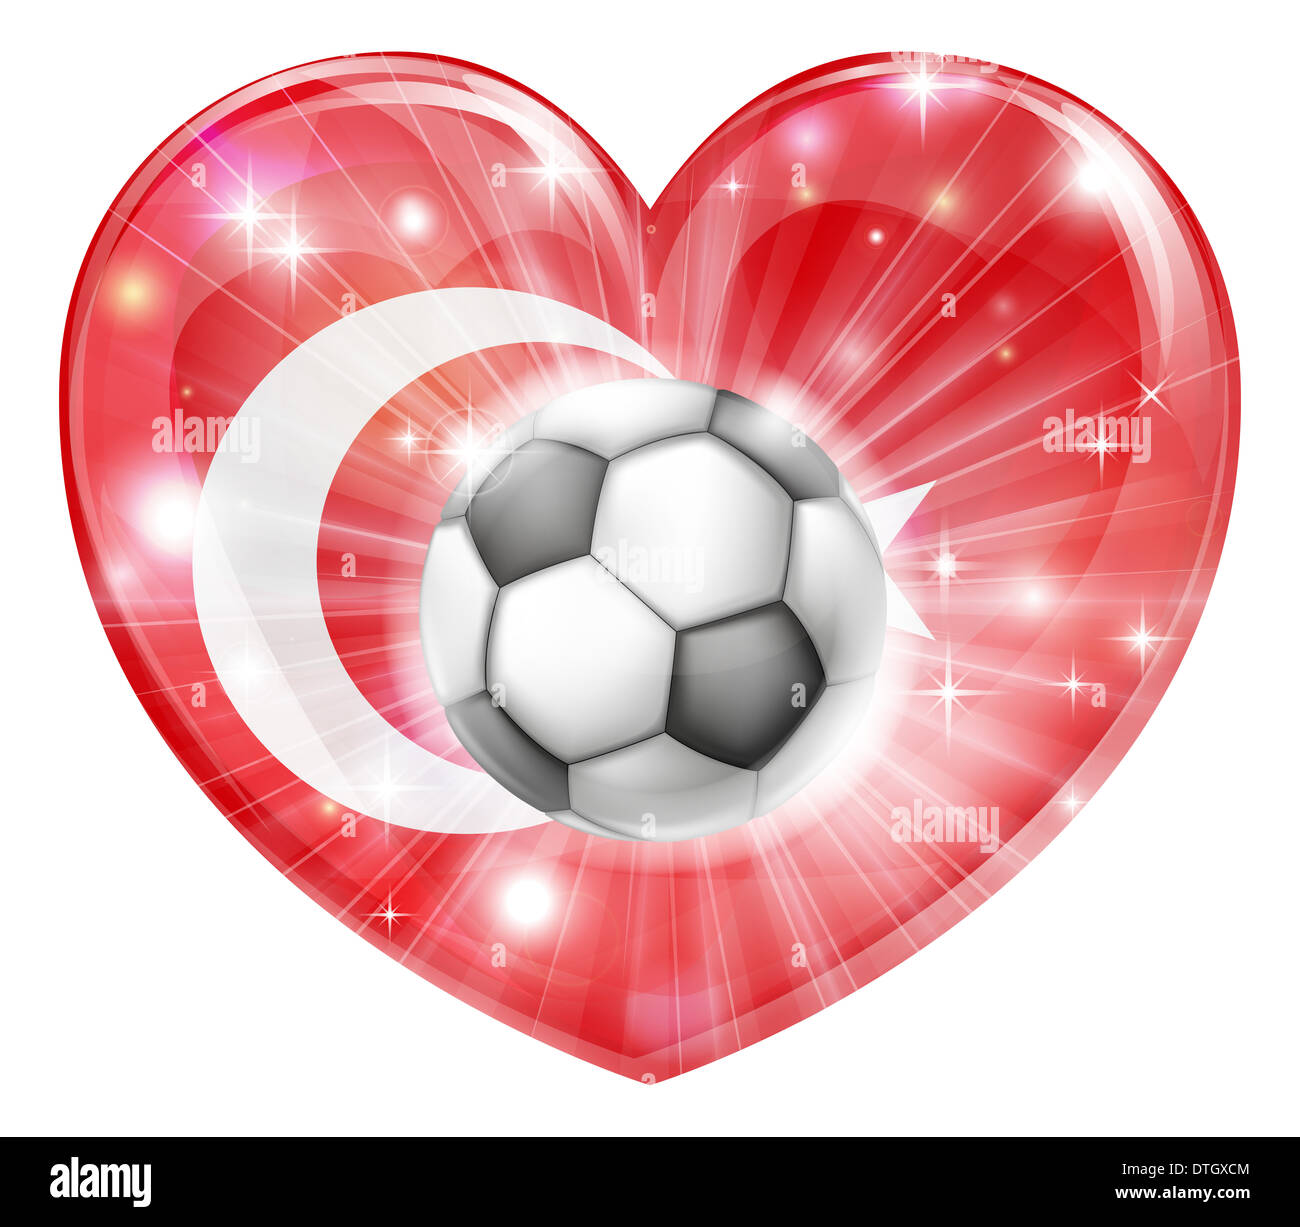 La Turchia soccer football ball bandiera amore cuore concetto con bandiera  turca in una forma di cuore e di un pallone da calcio di volare Foto stock  - Alamy